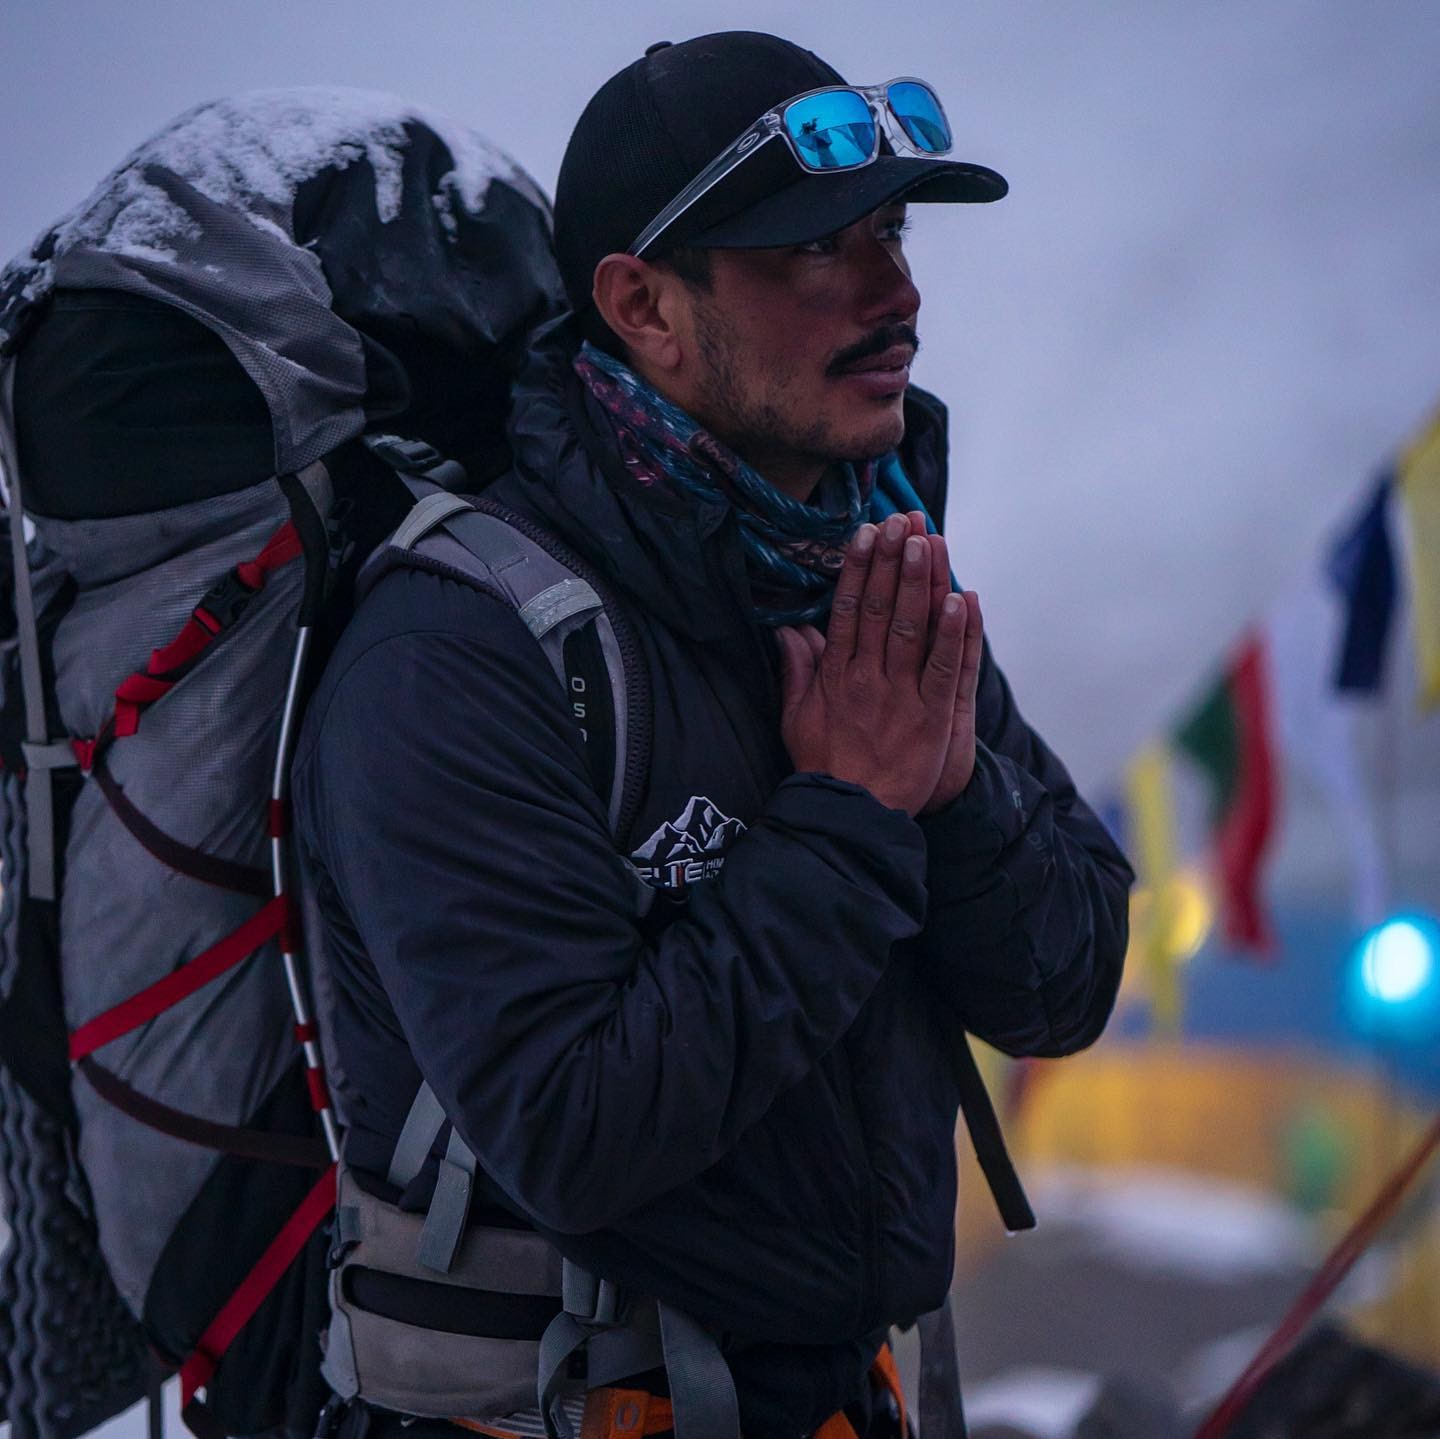 Chinh phục 14 đỉnh núi cao nhất thế giới trong 7 tháng - 4